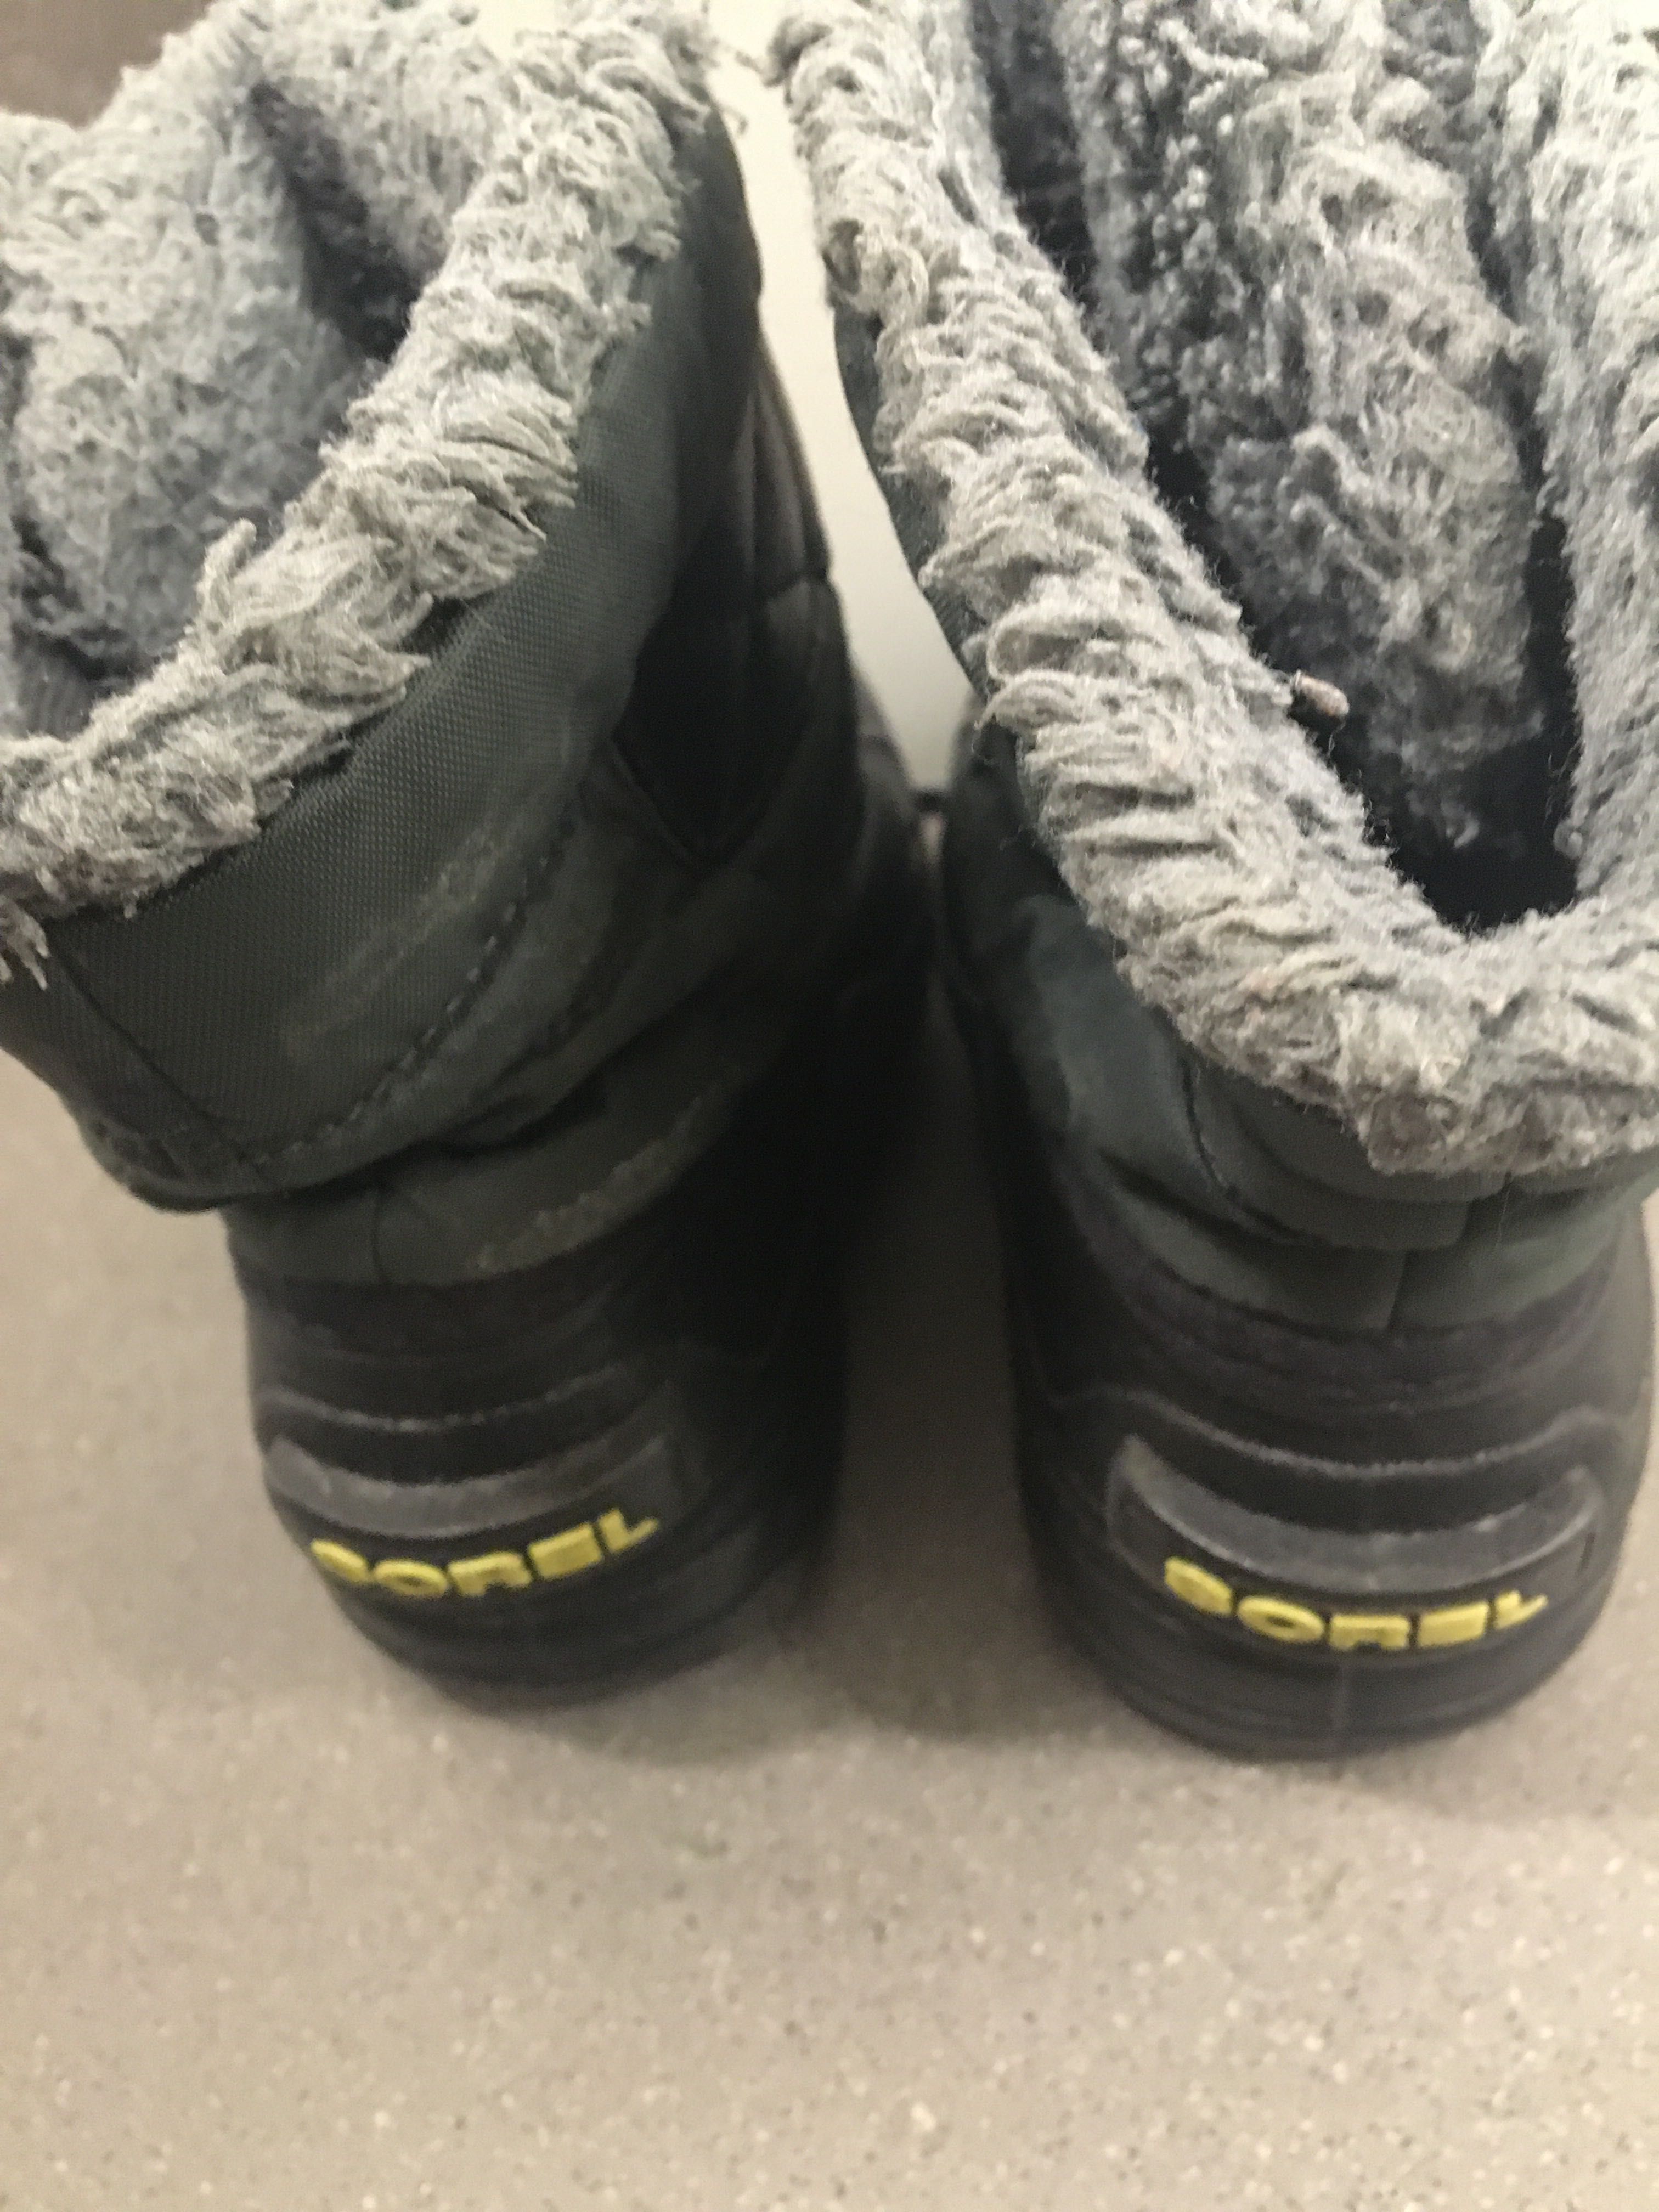 Ciepłe buty zimowe śniegowce kozaki marki Sorel rozmiar 25 13 15,5 cm